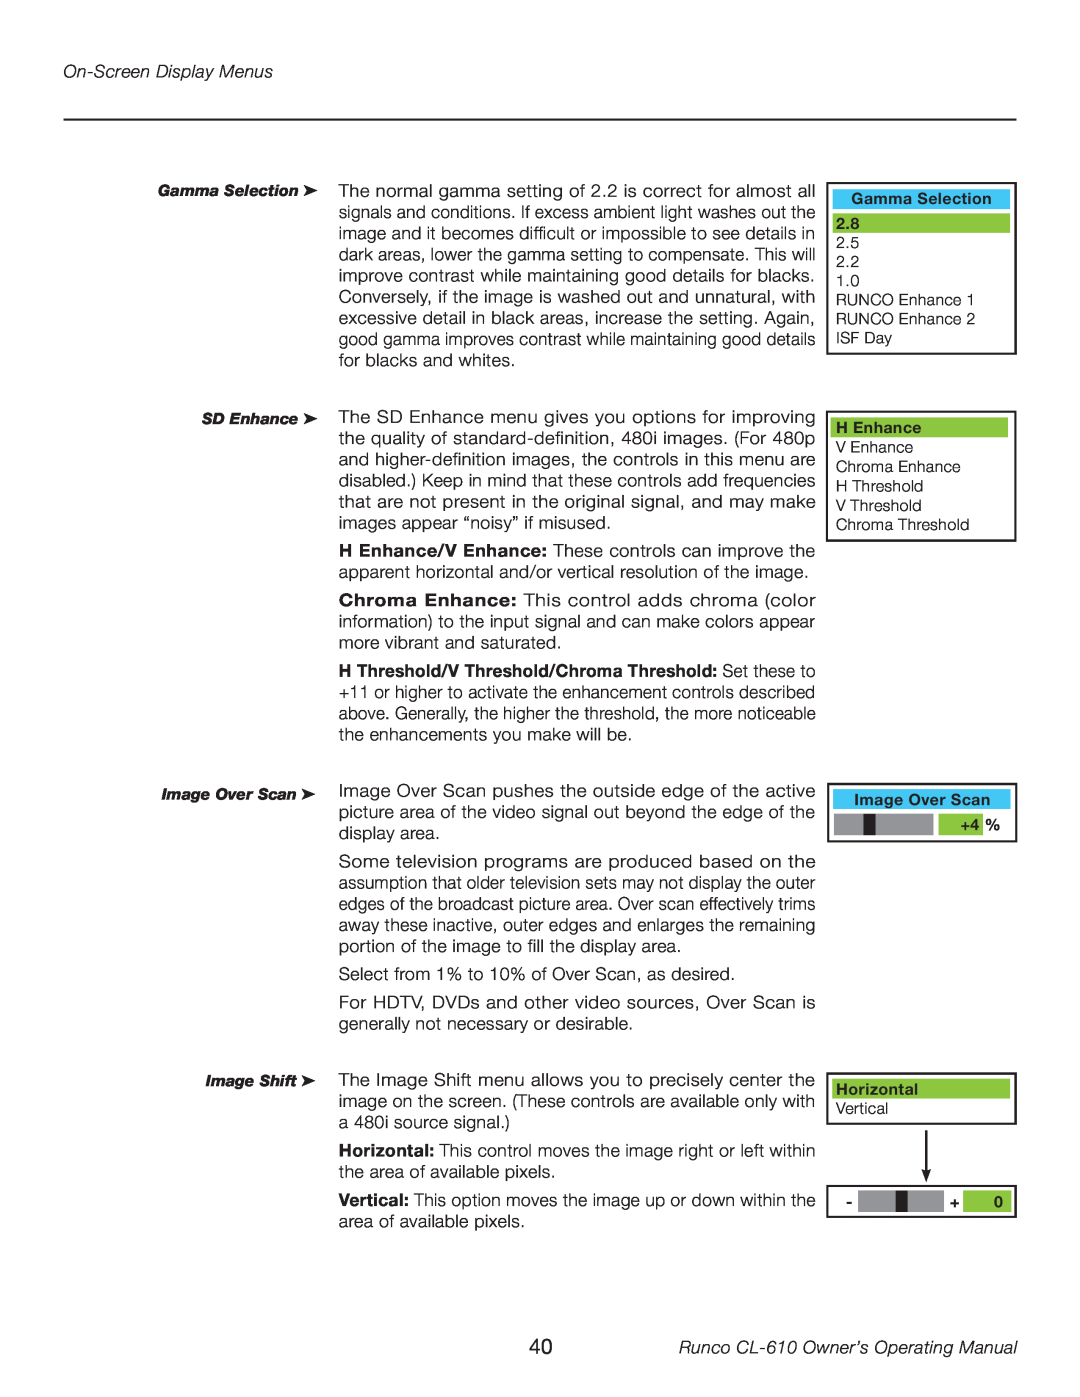 Runco CL-610LT manual On-Screen Display Menus, display area, Runco CL-610 Owner’s Operating Manual 